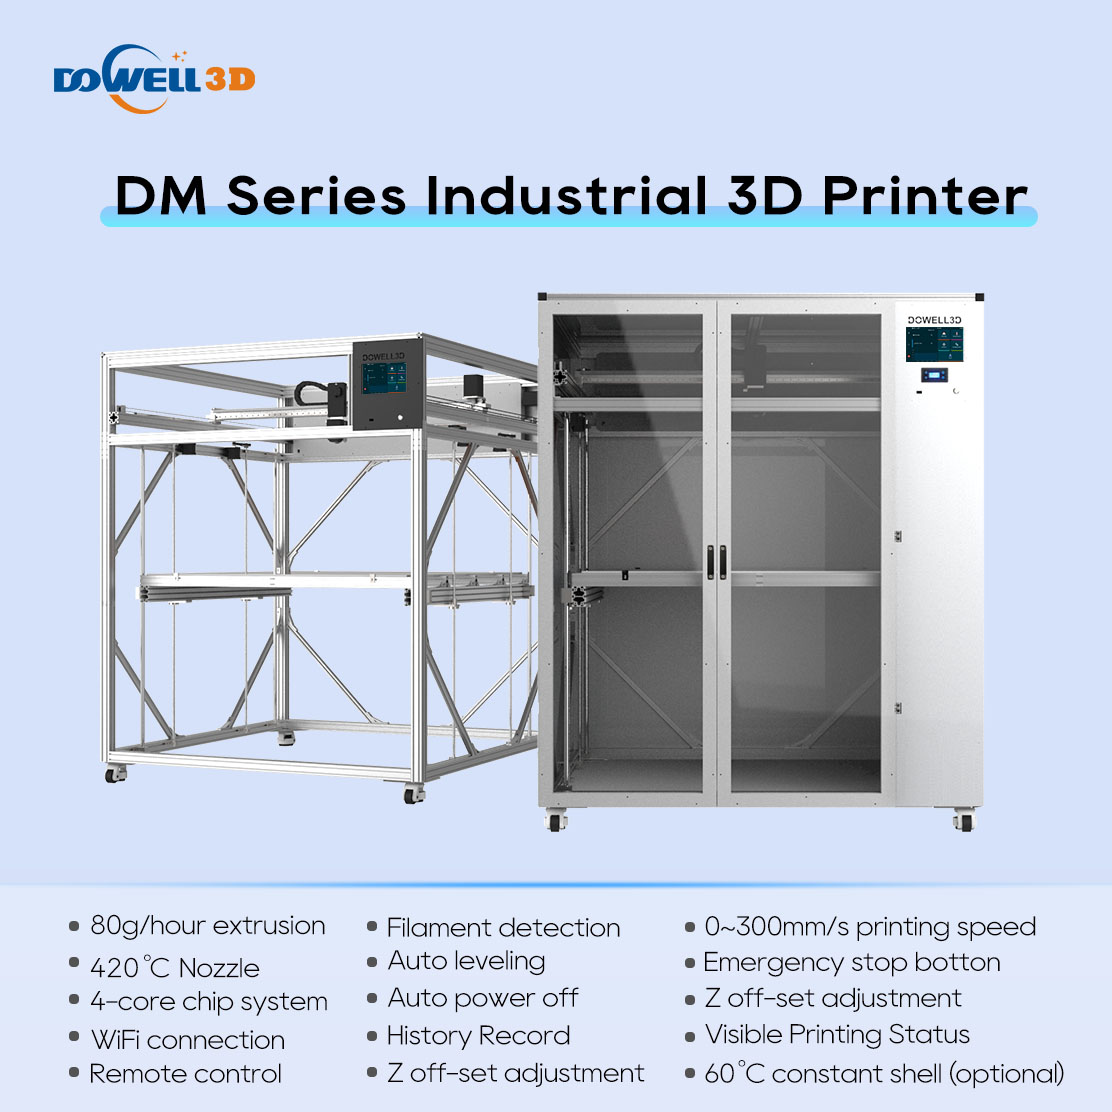 DOWELL3D Factory direct sale huge printer Enclosed Automotive Car parts large imprimante 3d industrial 3dprinter